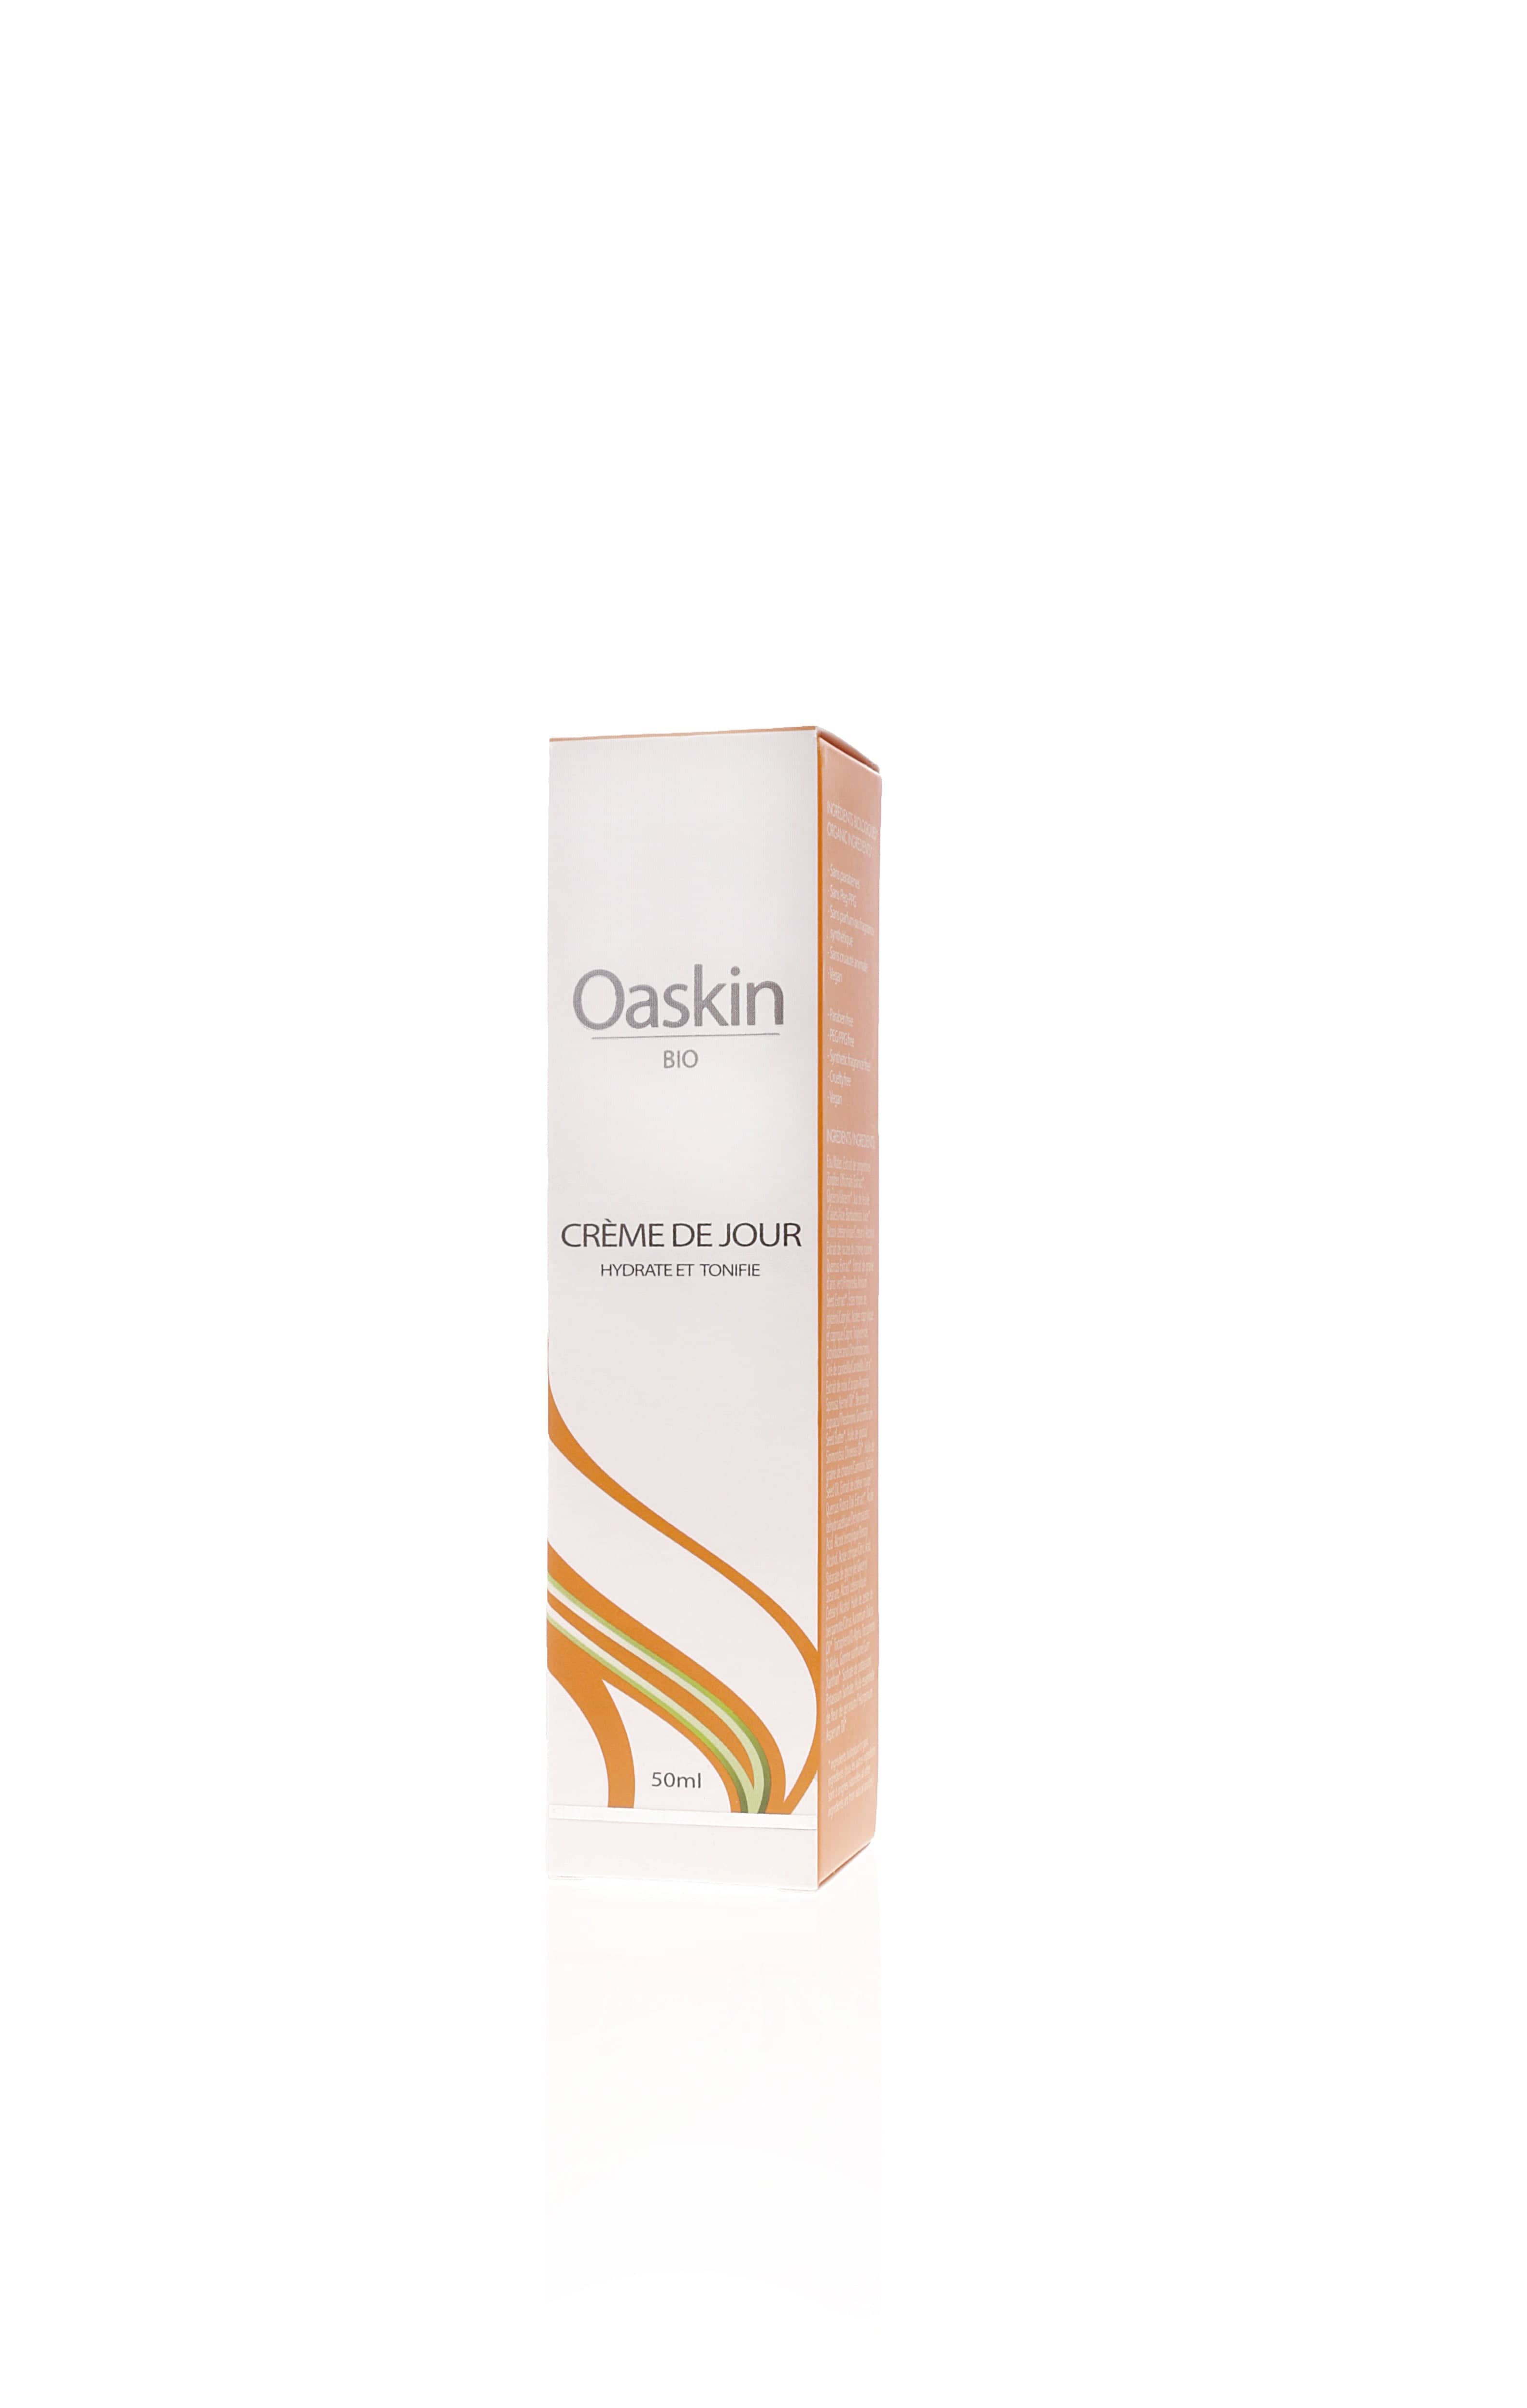 OASKIN BIO Soins & Beauté Crème de jour 50ml